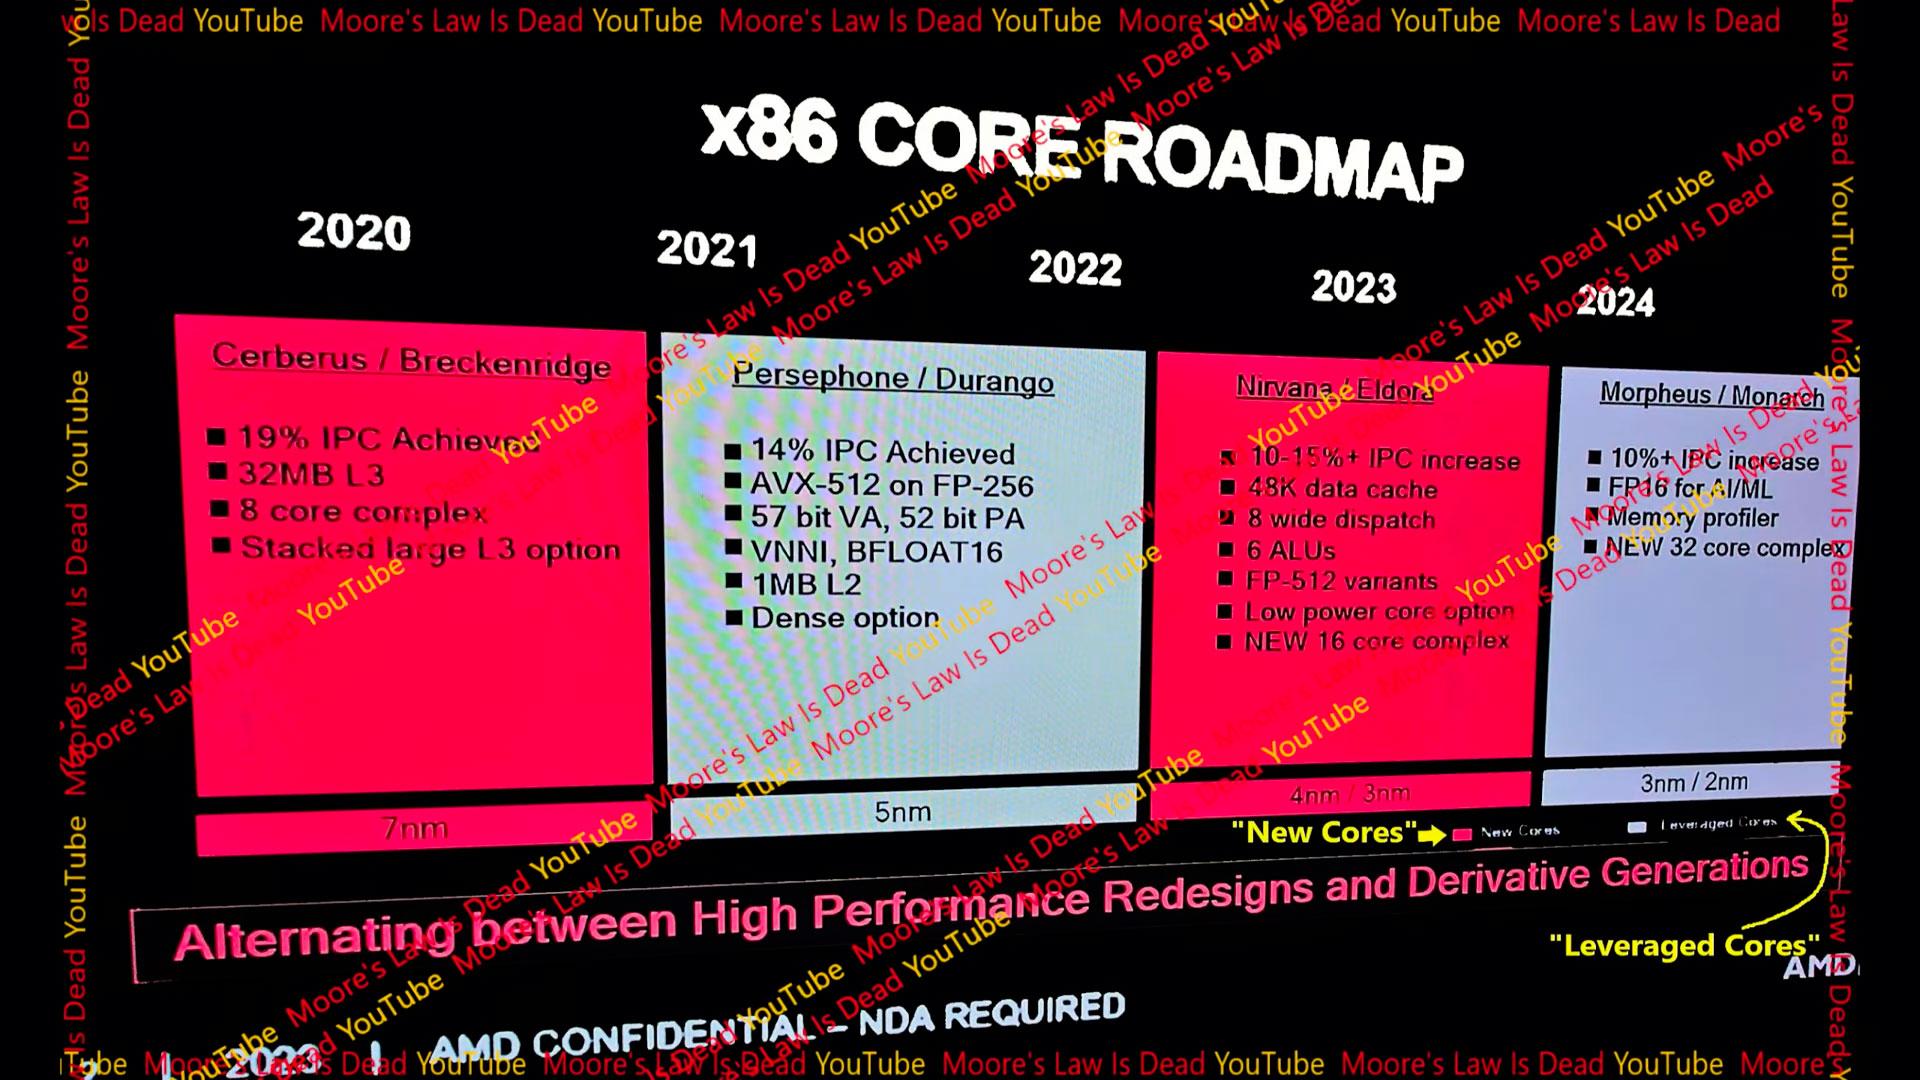 amd roadmap 2020 2024 leak 0923